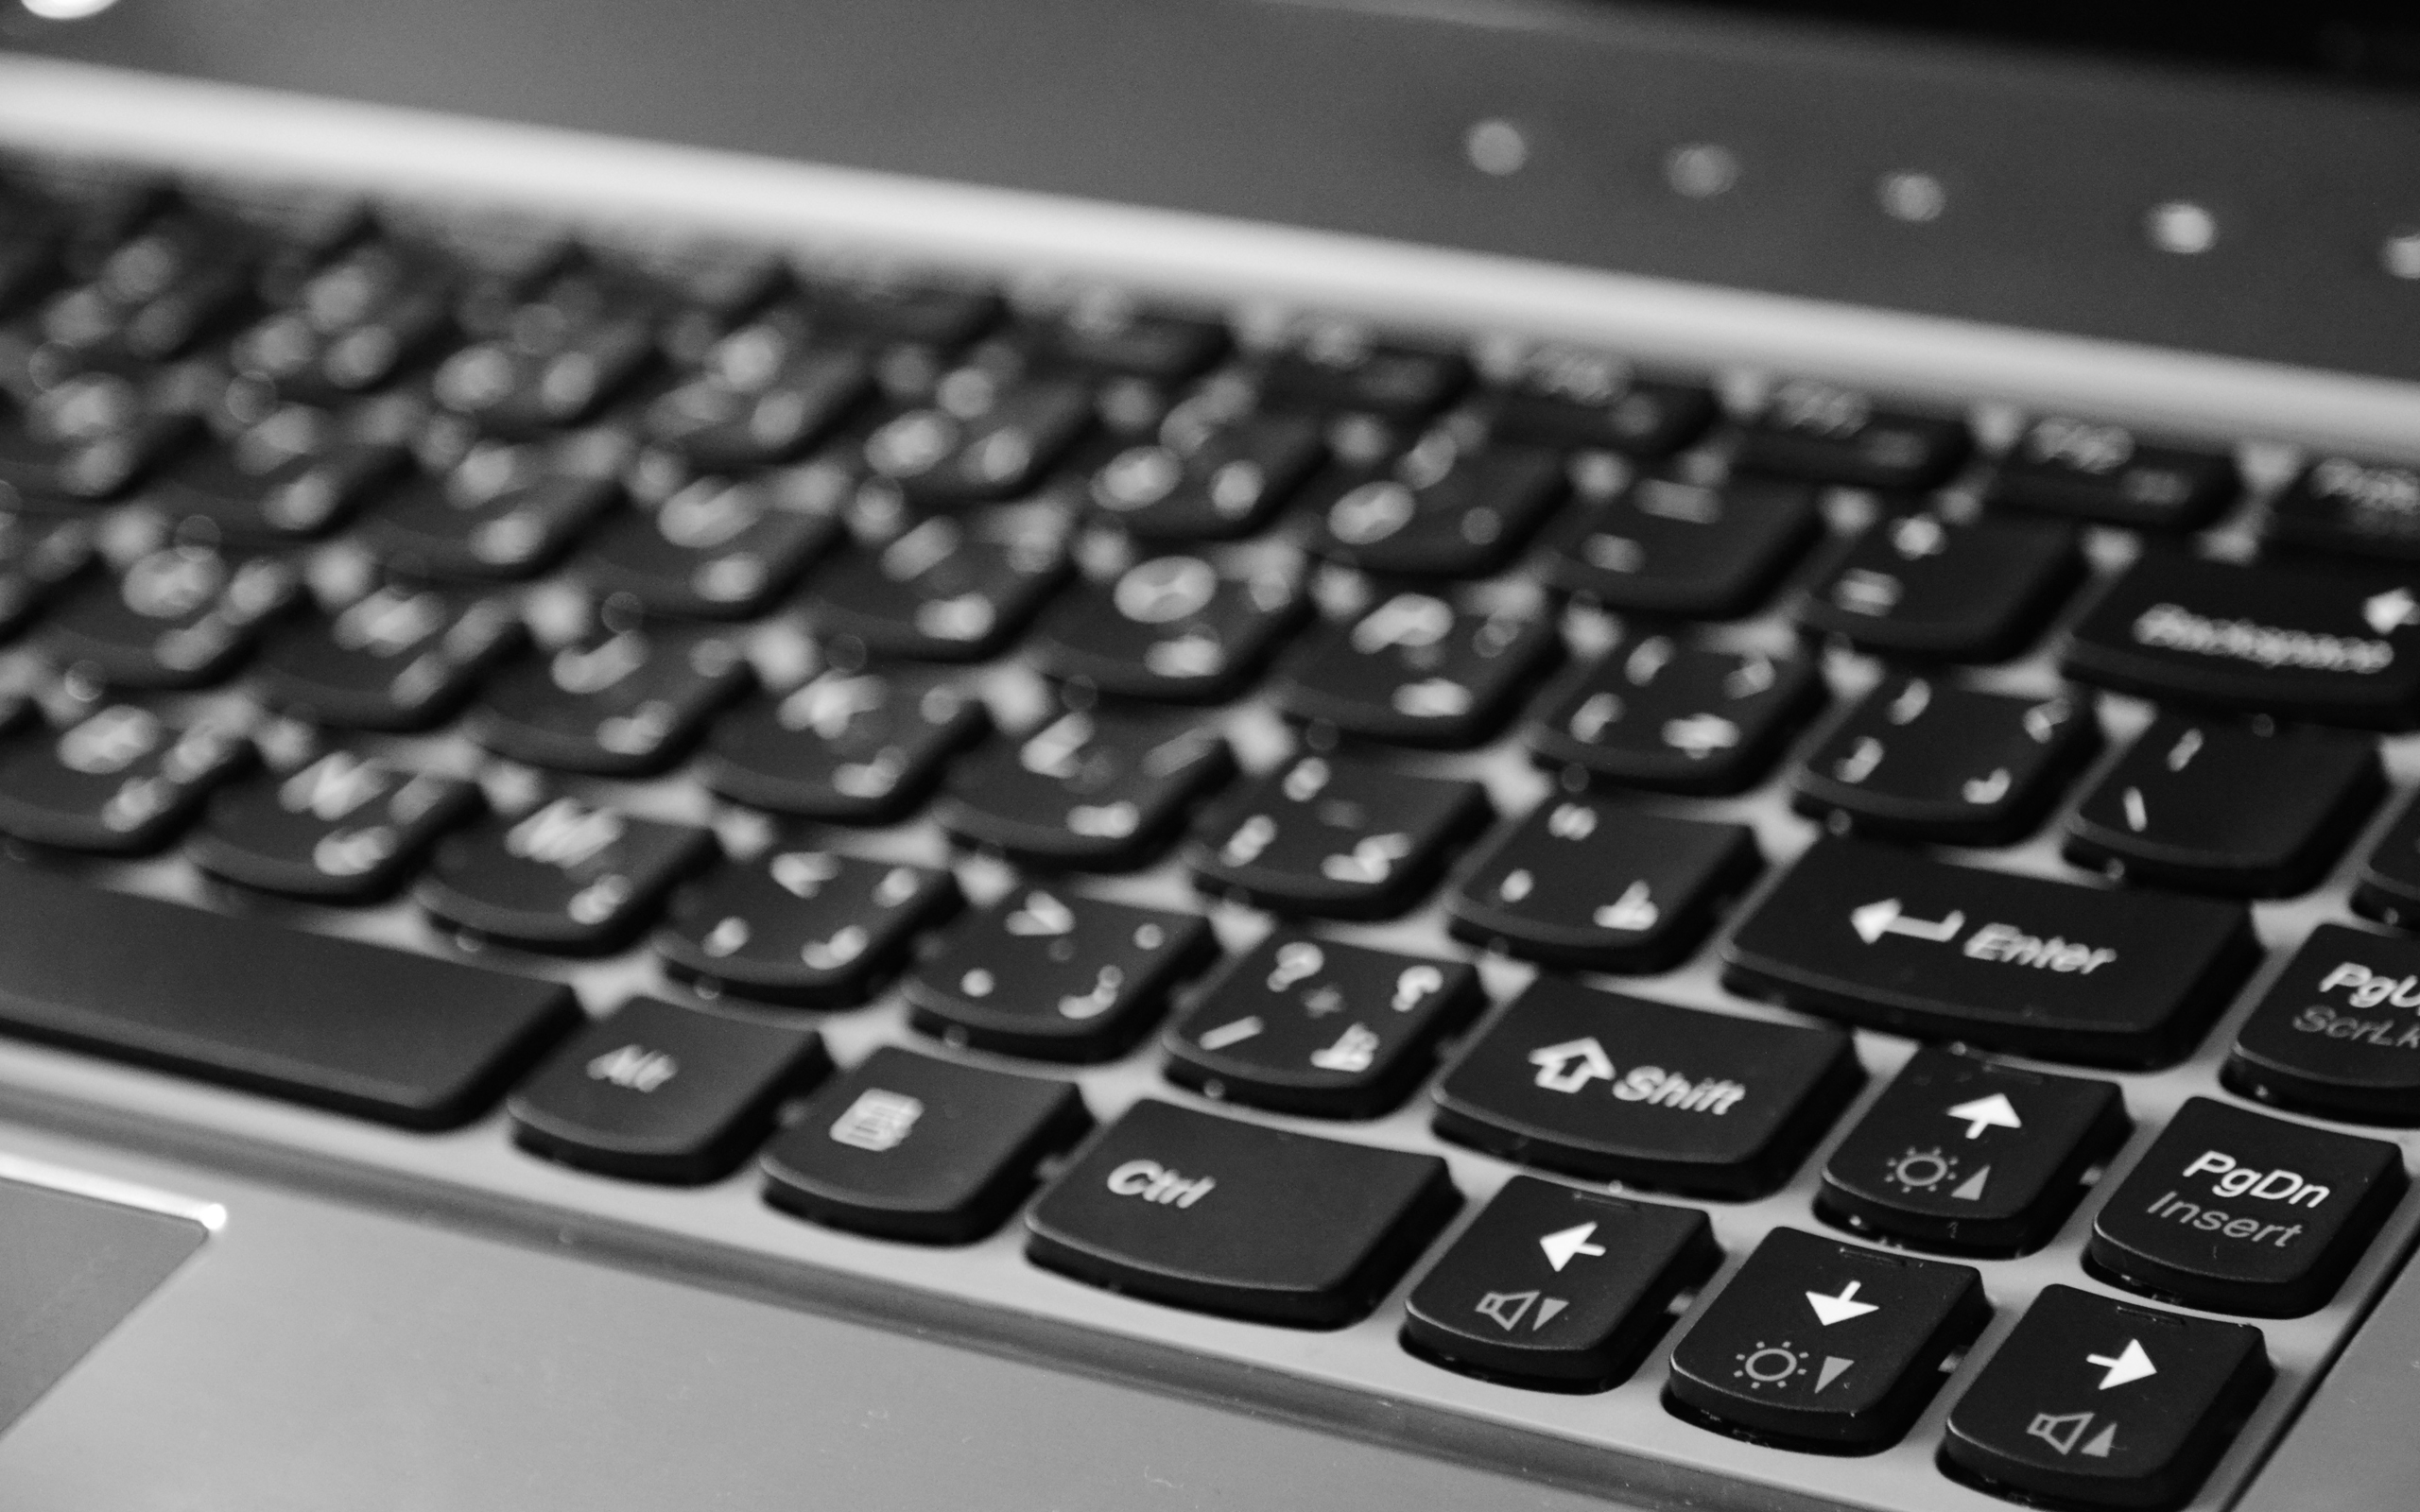 tastatur hintergrund hd,computer tastatur,leertaste,eingabegerät,technologie,computerkomponente